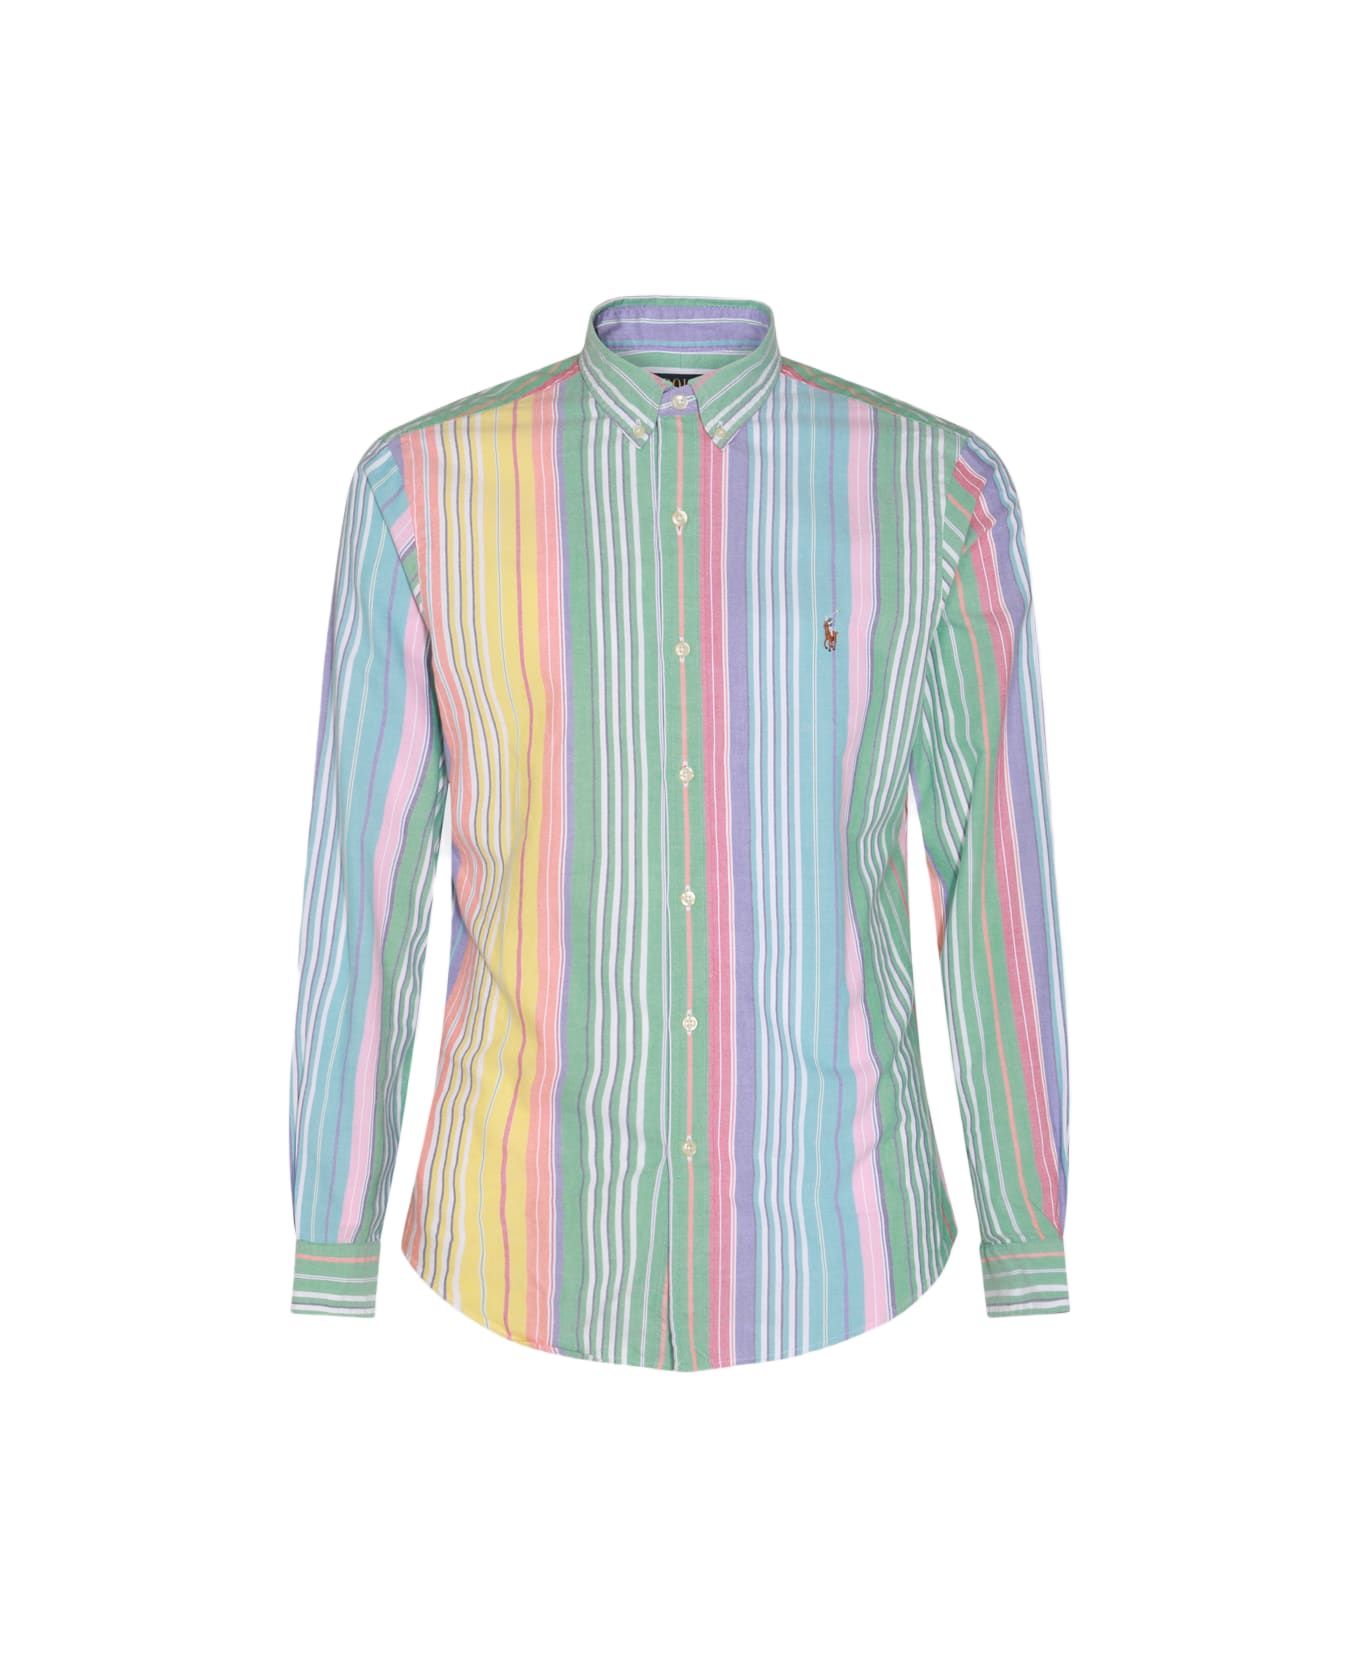 Polo Ralph Lauren Multicolor Cotton Shirt - 6346A GREEN/YELLOW MULTI